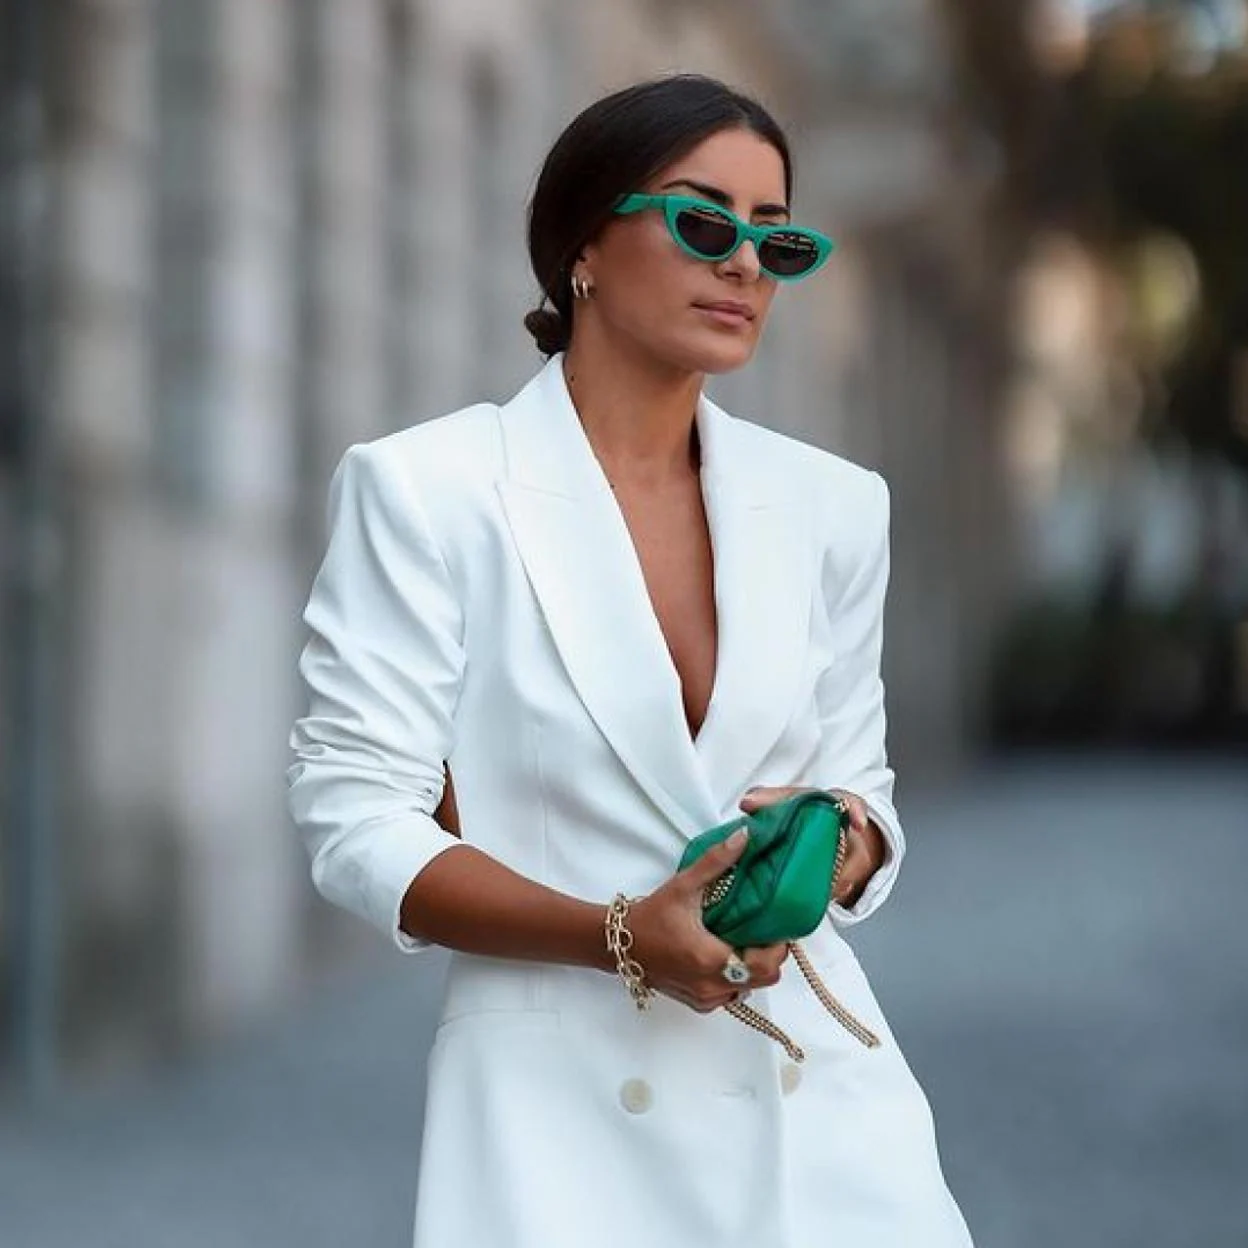 original traje de chaqueta de Zara perfecto para arrasar: blanco, barato y con un escote a espalda muy estiloso | Mujer Hoy